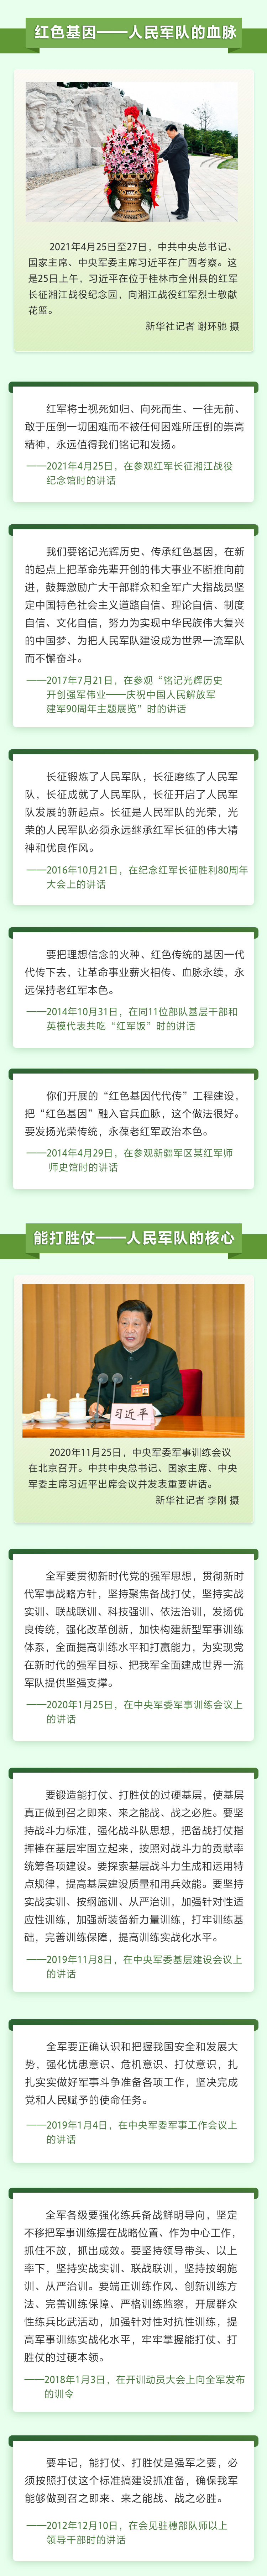 习近平谈军队建设3 人民网-中国共产党新闻网.jpg